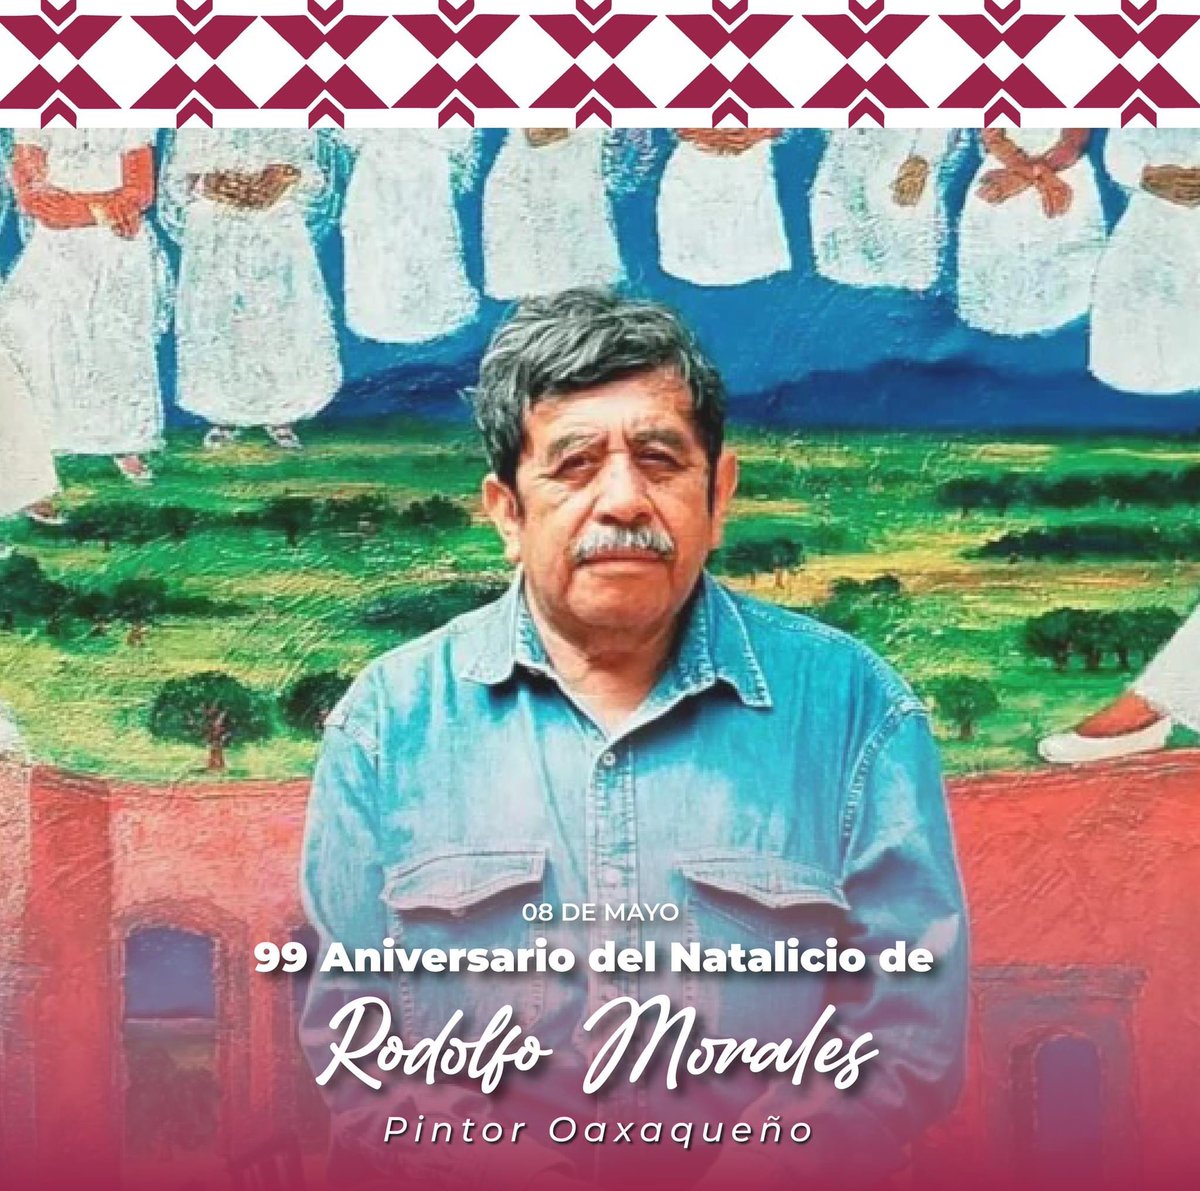 Hoy, se conmemora el 99 Aniversario del Natalicio del gran artista plástico oaxaqueño Rodolfo Morales. En sus obras se aprecia el realismo mágico y que hoy en día desde el Gobierno del Estado de mantiene vivo su legado, impulsando el arte y la cultura como agentes de cambio.